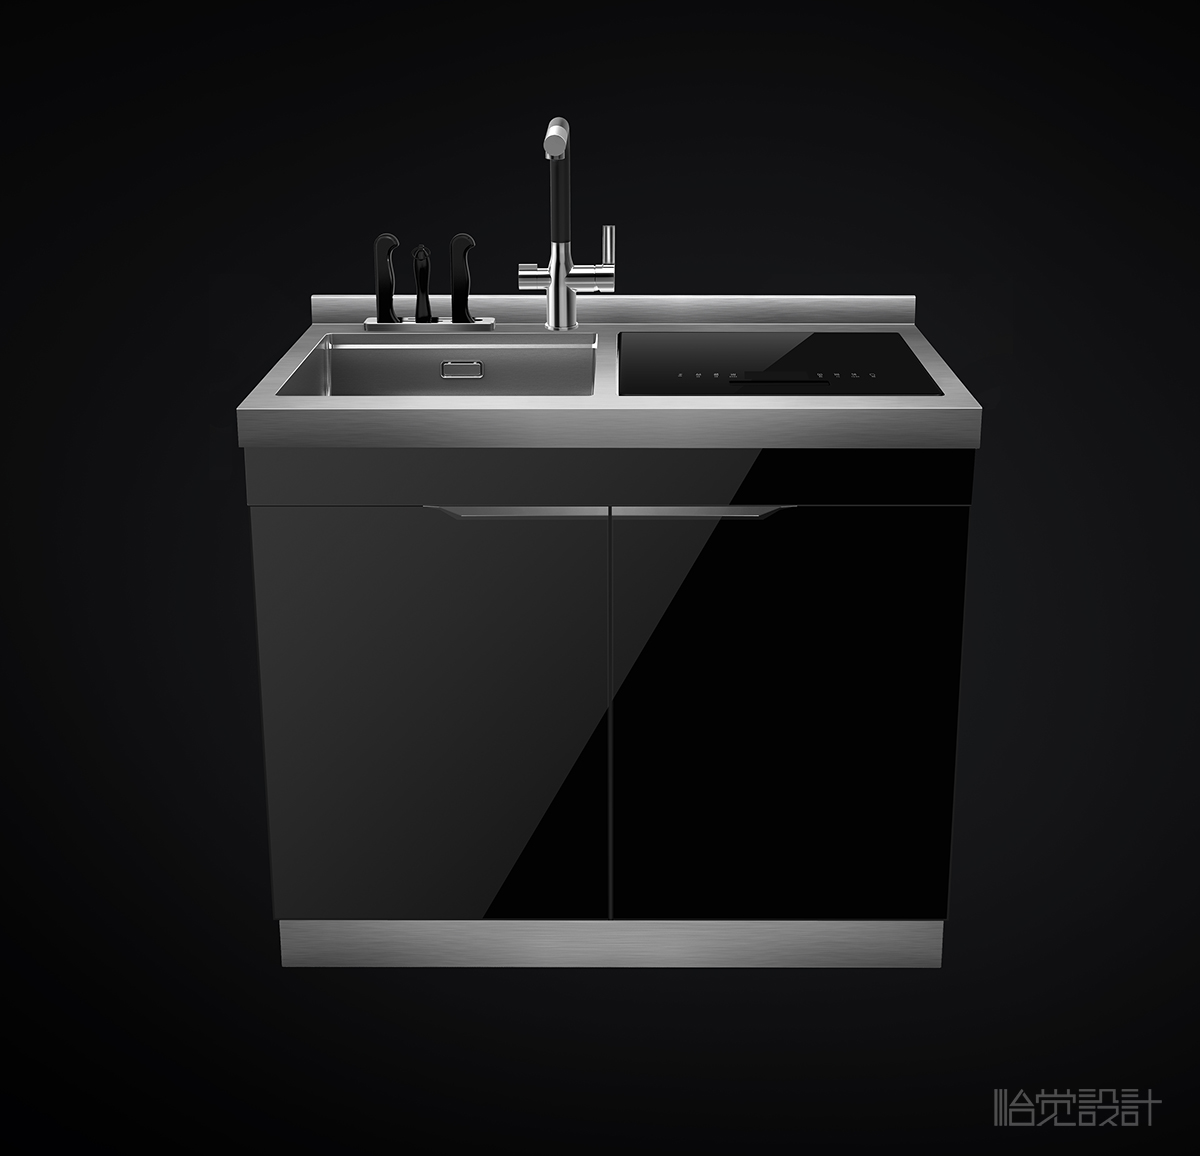 水槽- 集成水槽-智能水槽-集成灶-消毒柜-厨房用品-怡觉设计 (4).jpg